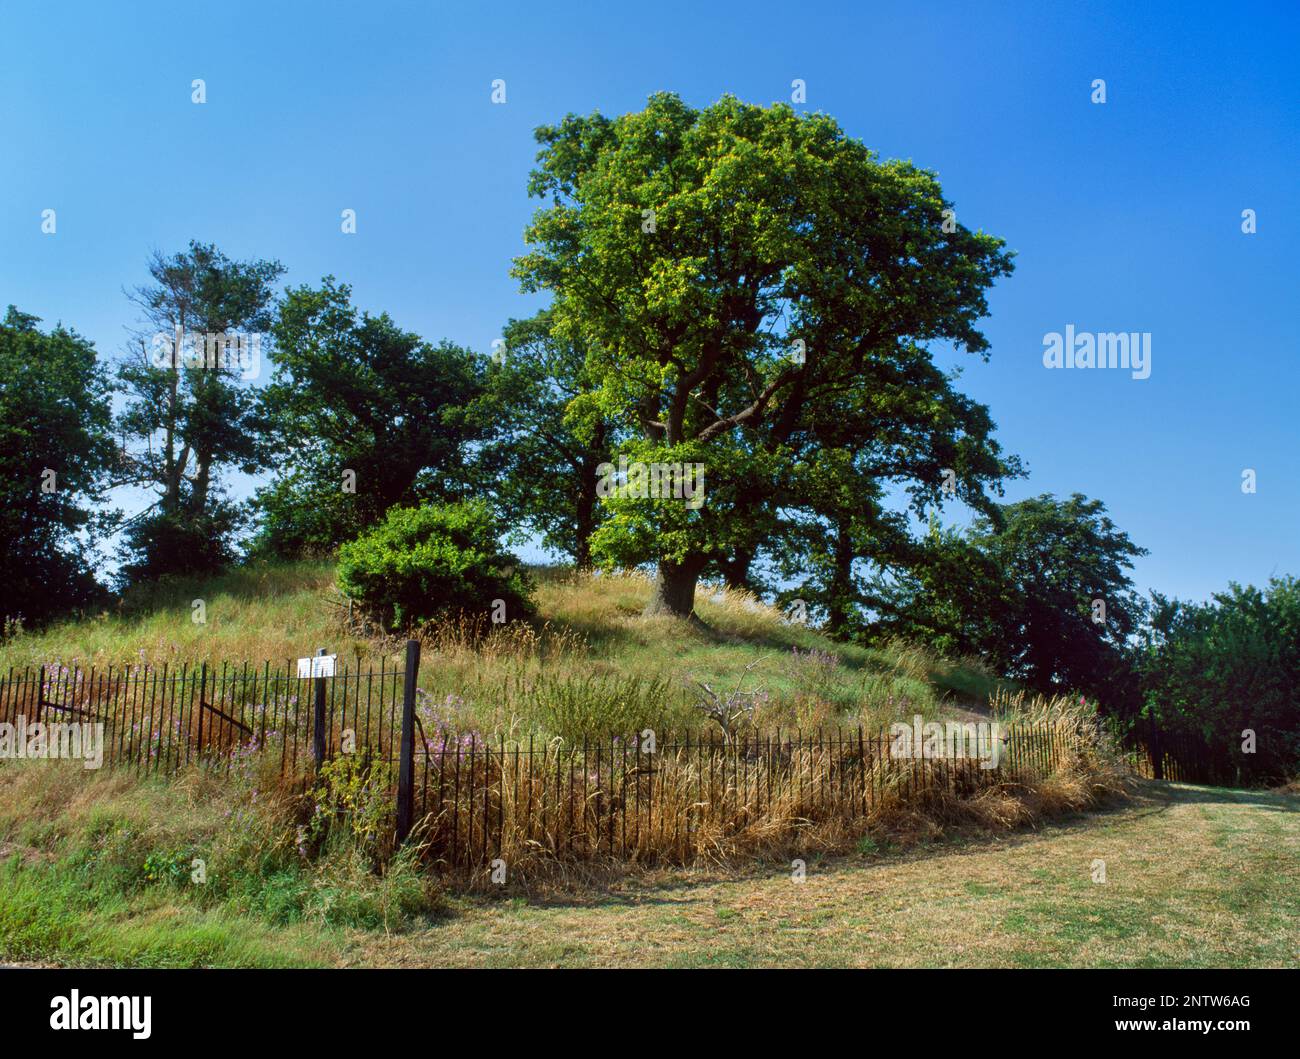 Vue N de la grange ronde romaine contenant un sédastad tardif/enterrement de crémation précoce de C2ndAD d'un enfant sur l'île Mersea, Essex, Angleterre, Royaume-Uni. Banque D'Images